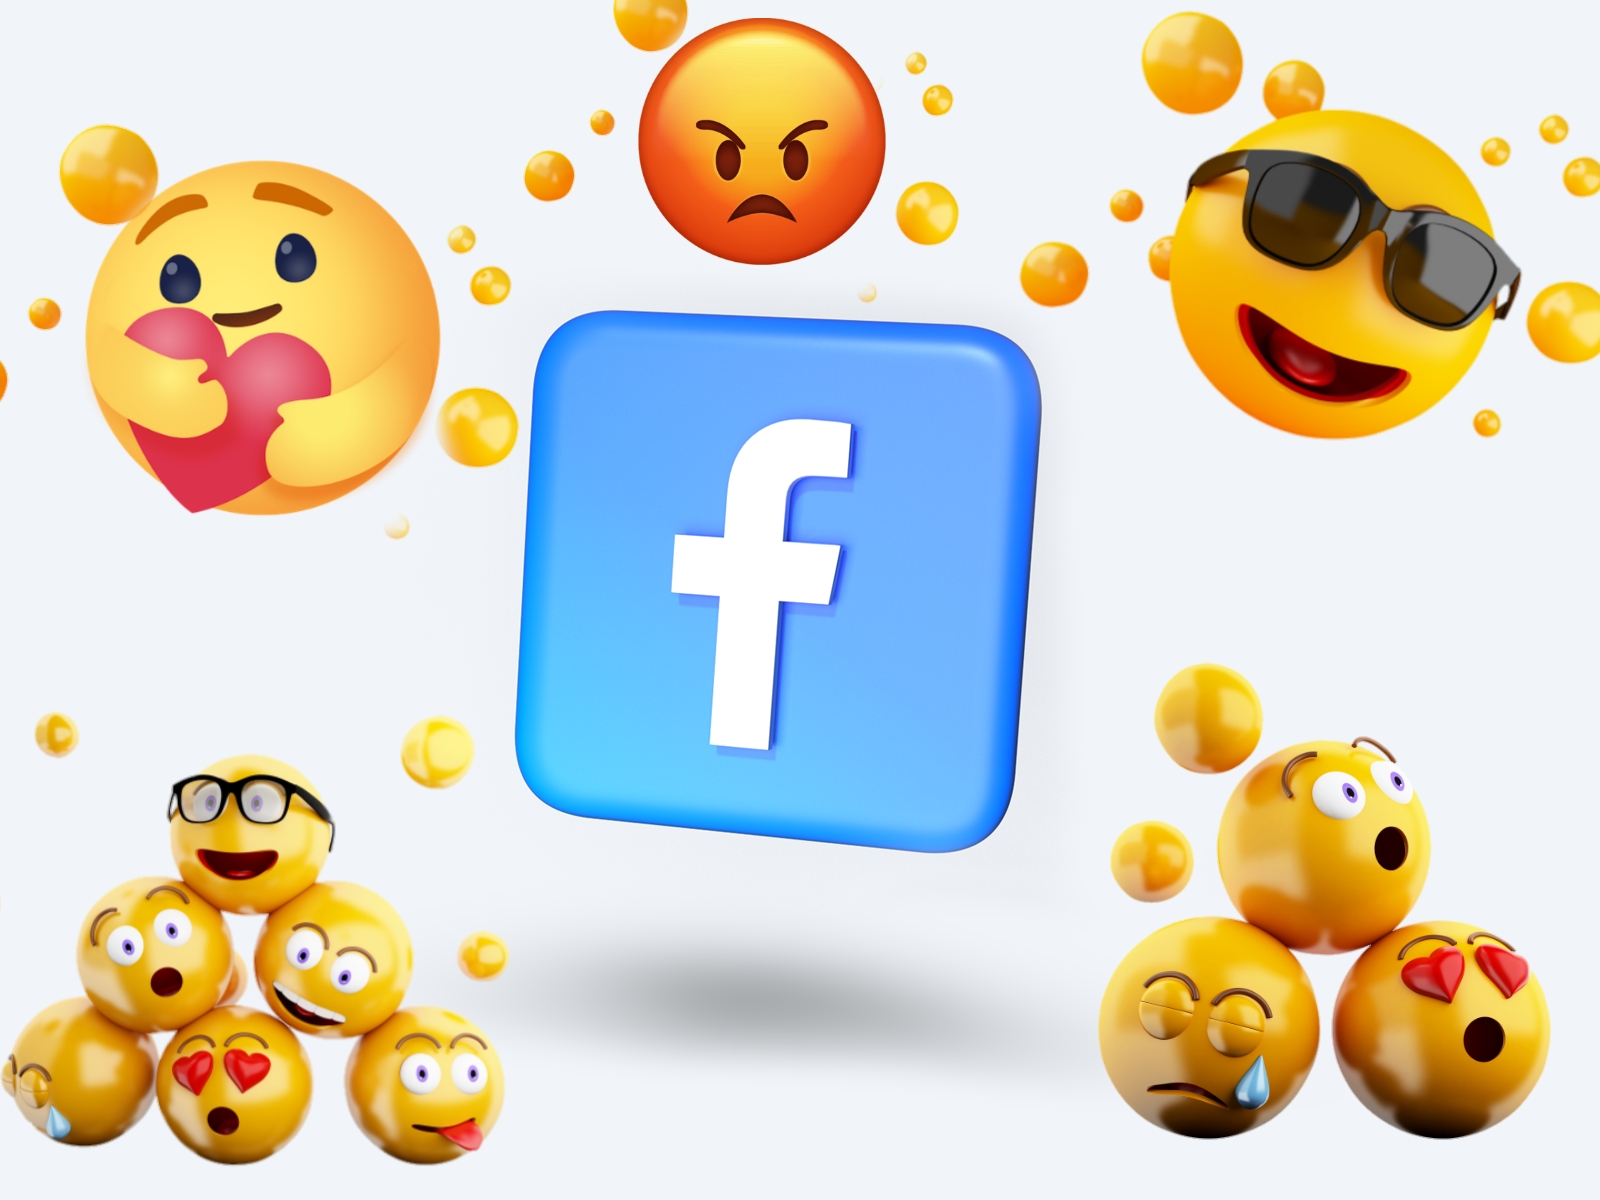 معاني الإيموجي Emoji كاملة والفرق بين الايموجي والايموشن على فيسبوك